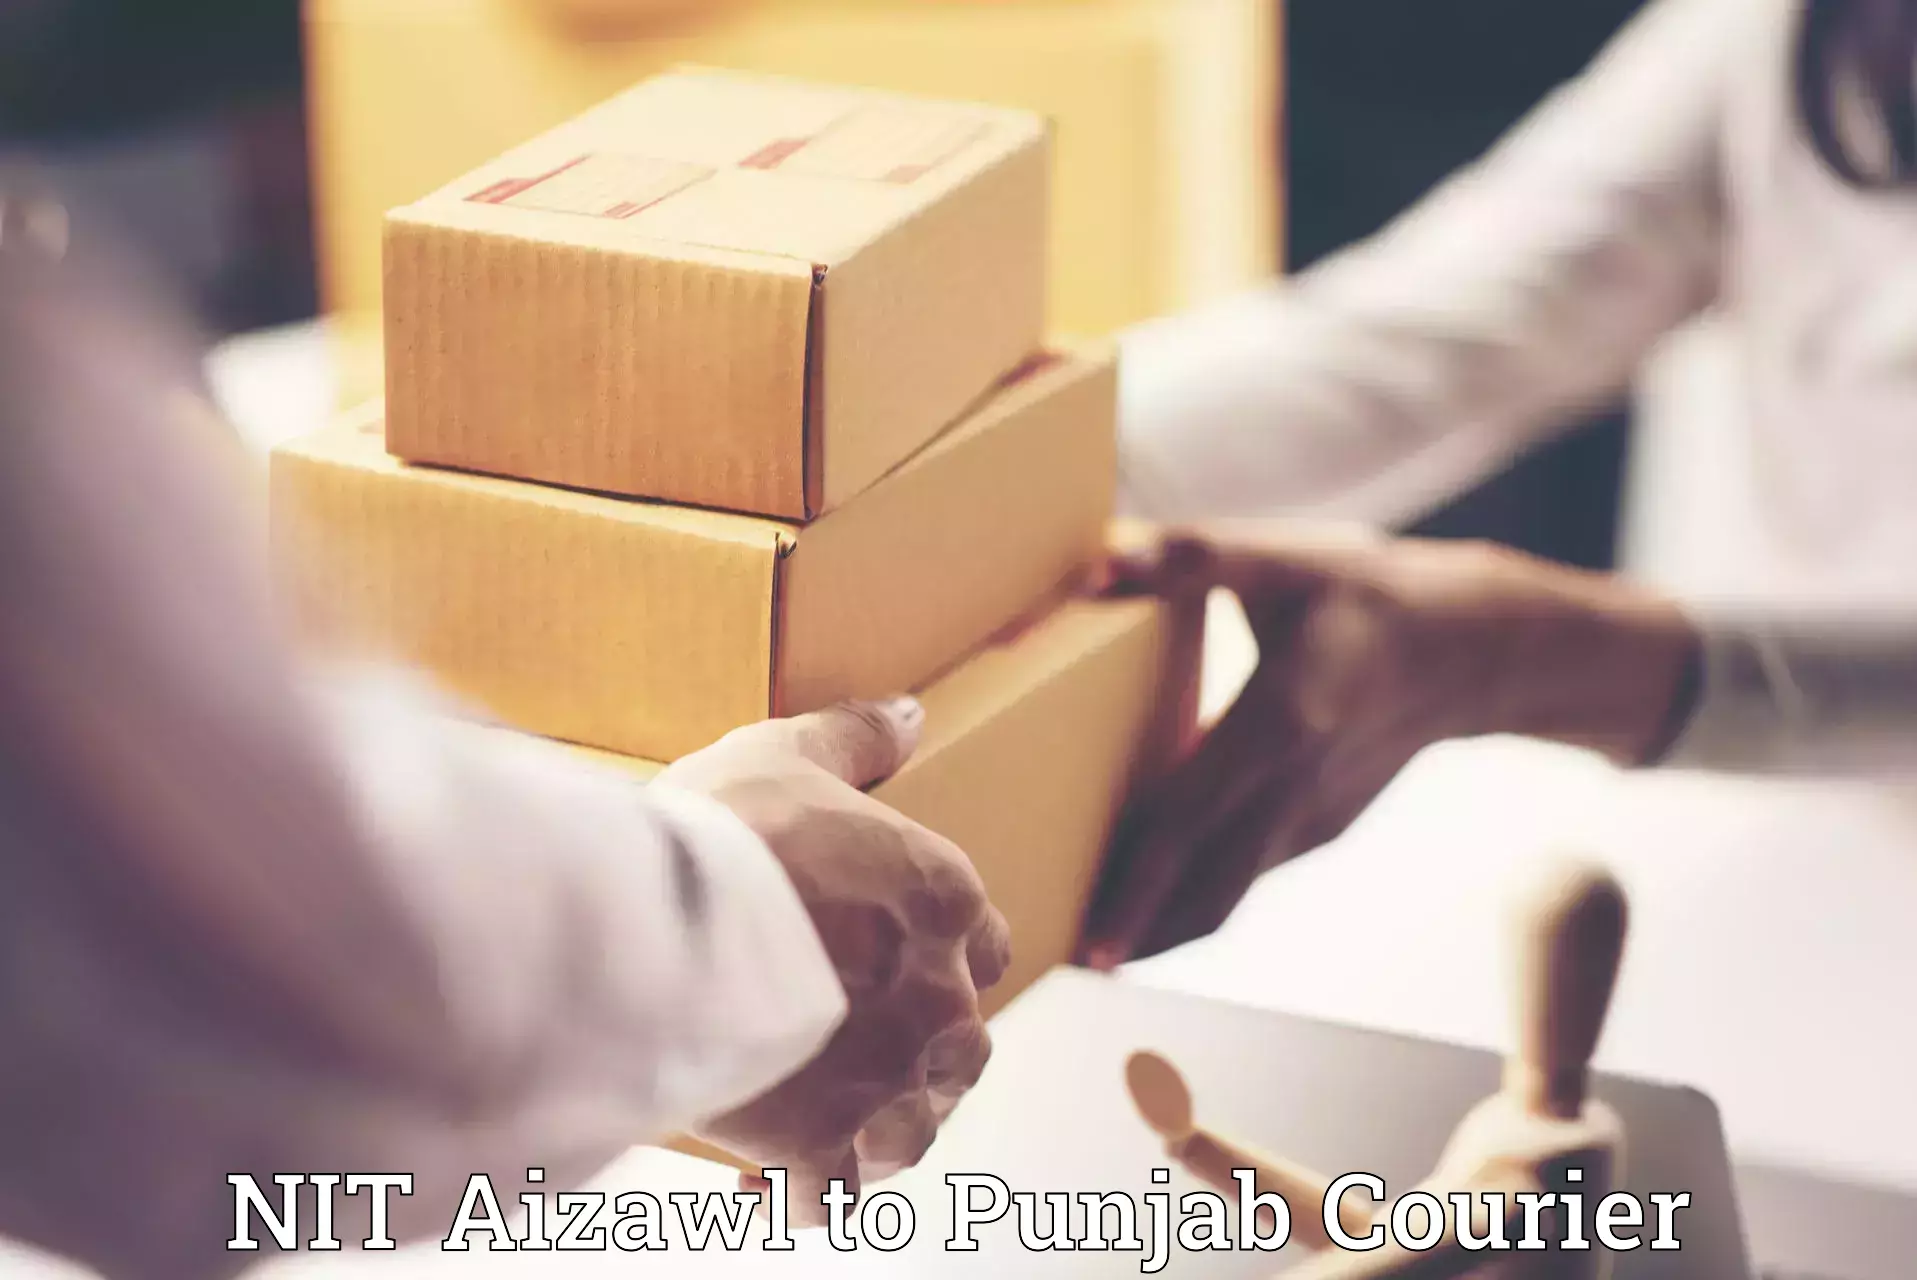 Furniture moving experts NIT Aizawl to Punjab